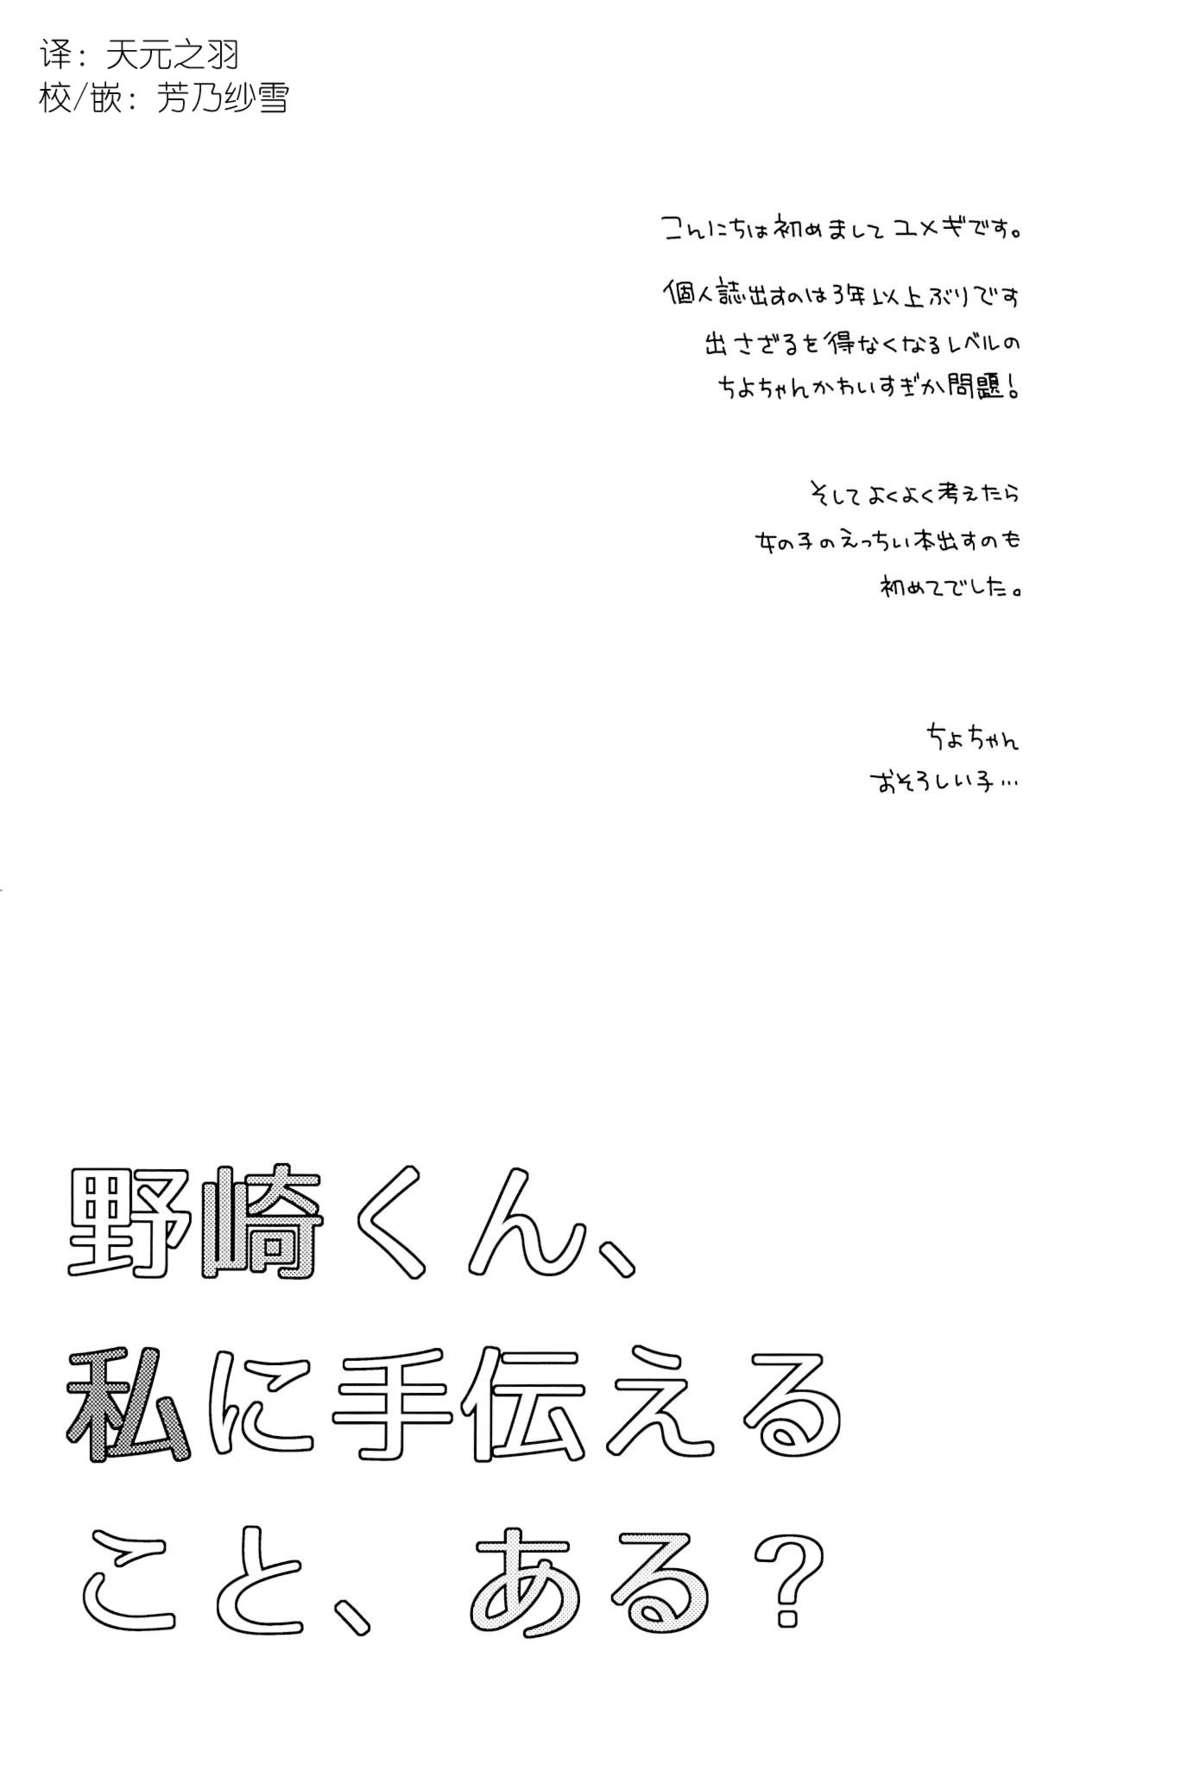 Whipping Nozaki-kun, Watashi ni Tetsudaeru koto, Aru? - Gekkan shoujo nozaki kun Street - Page 3